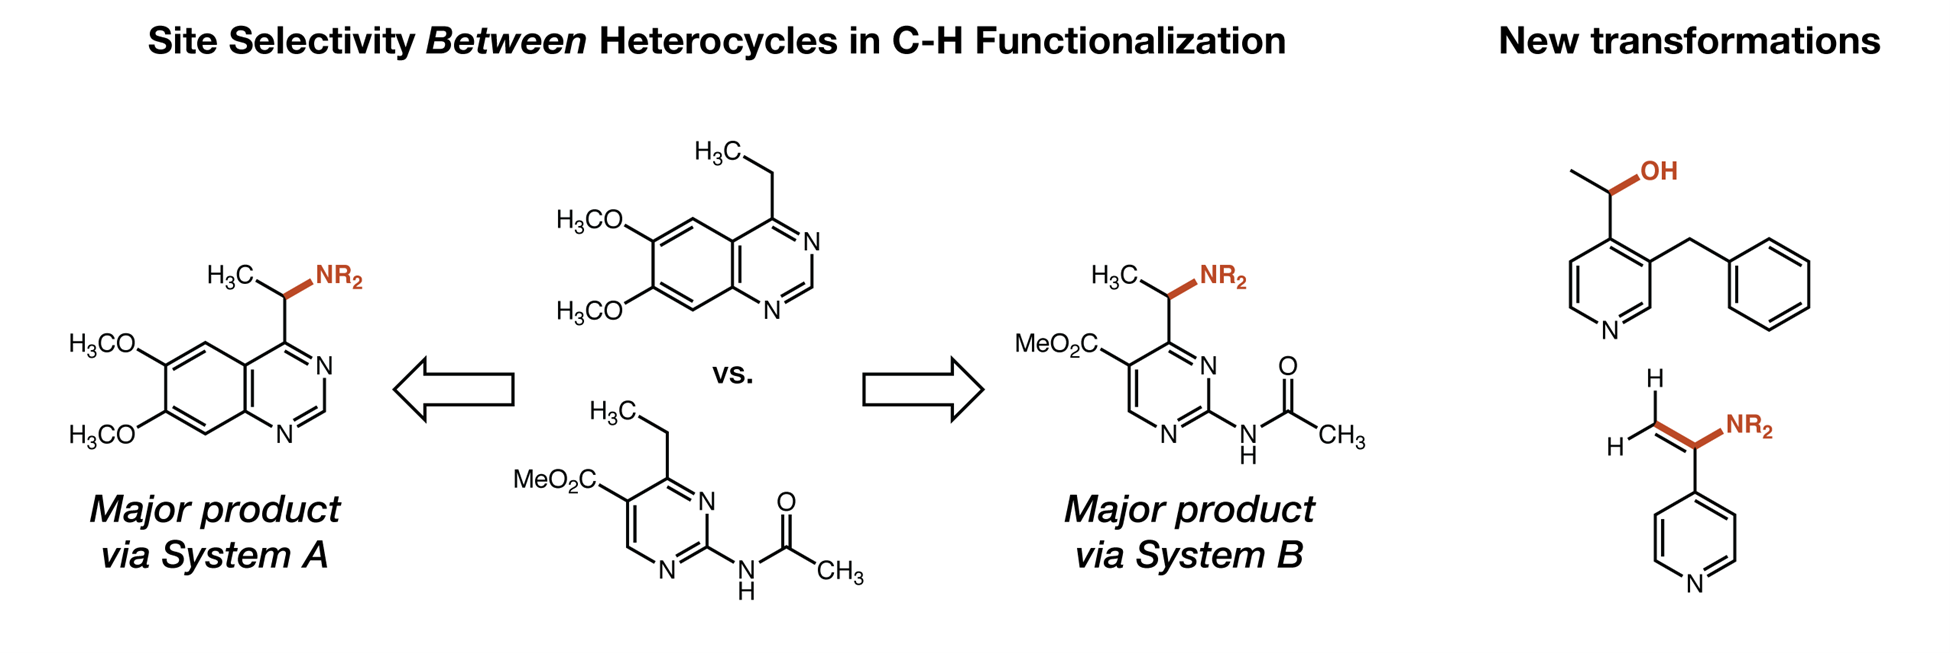 Site-Selective C-H Functionalization in Heterocycles